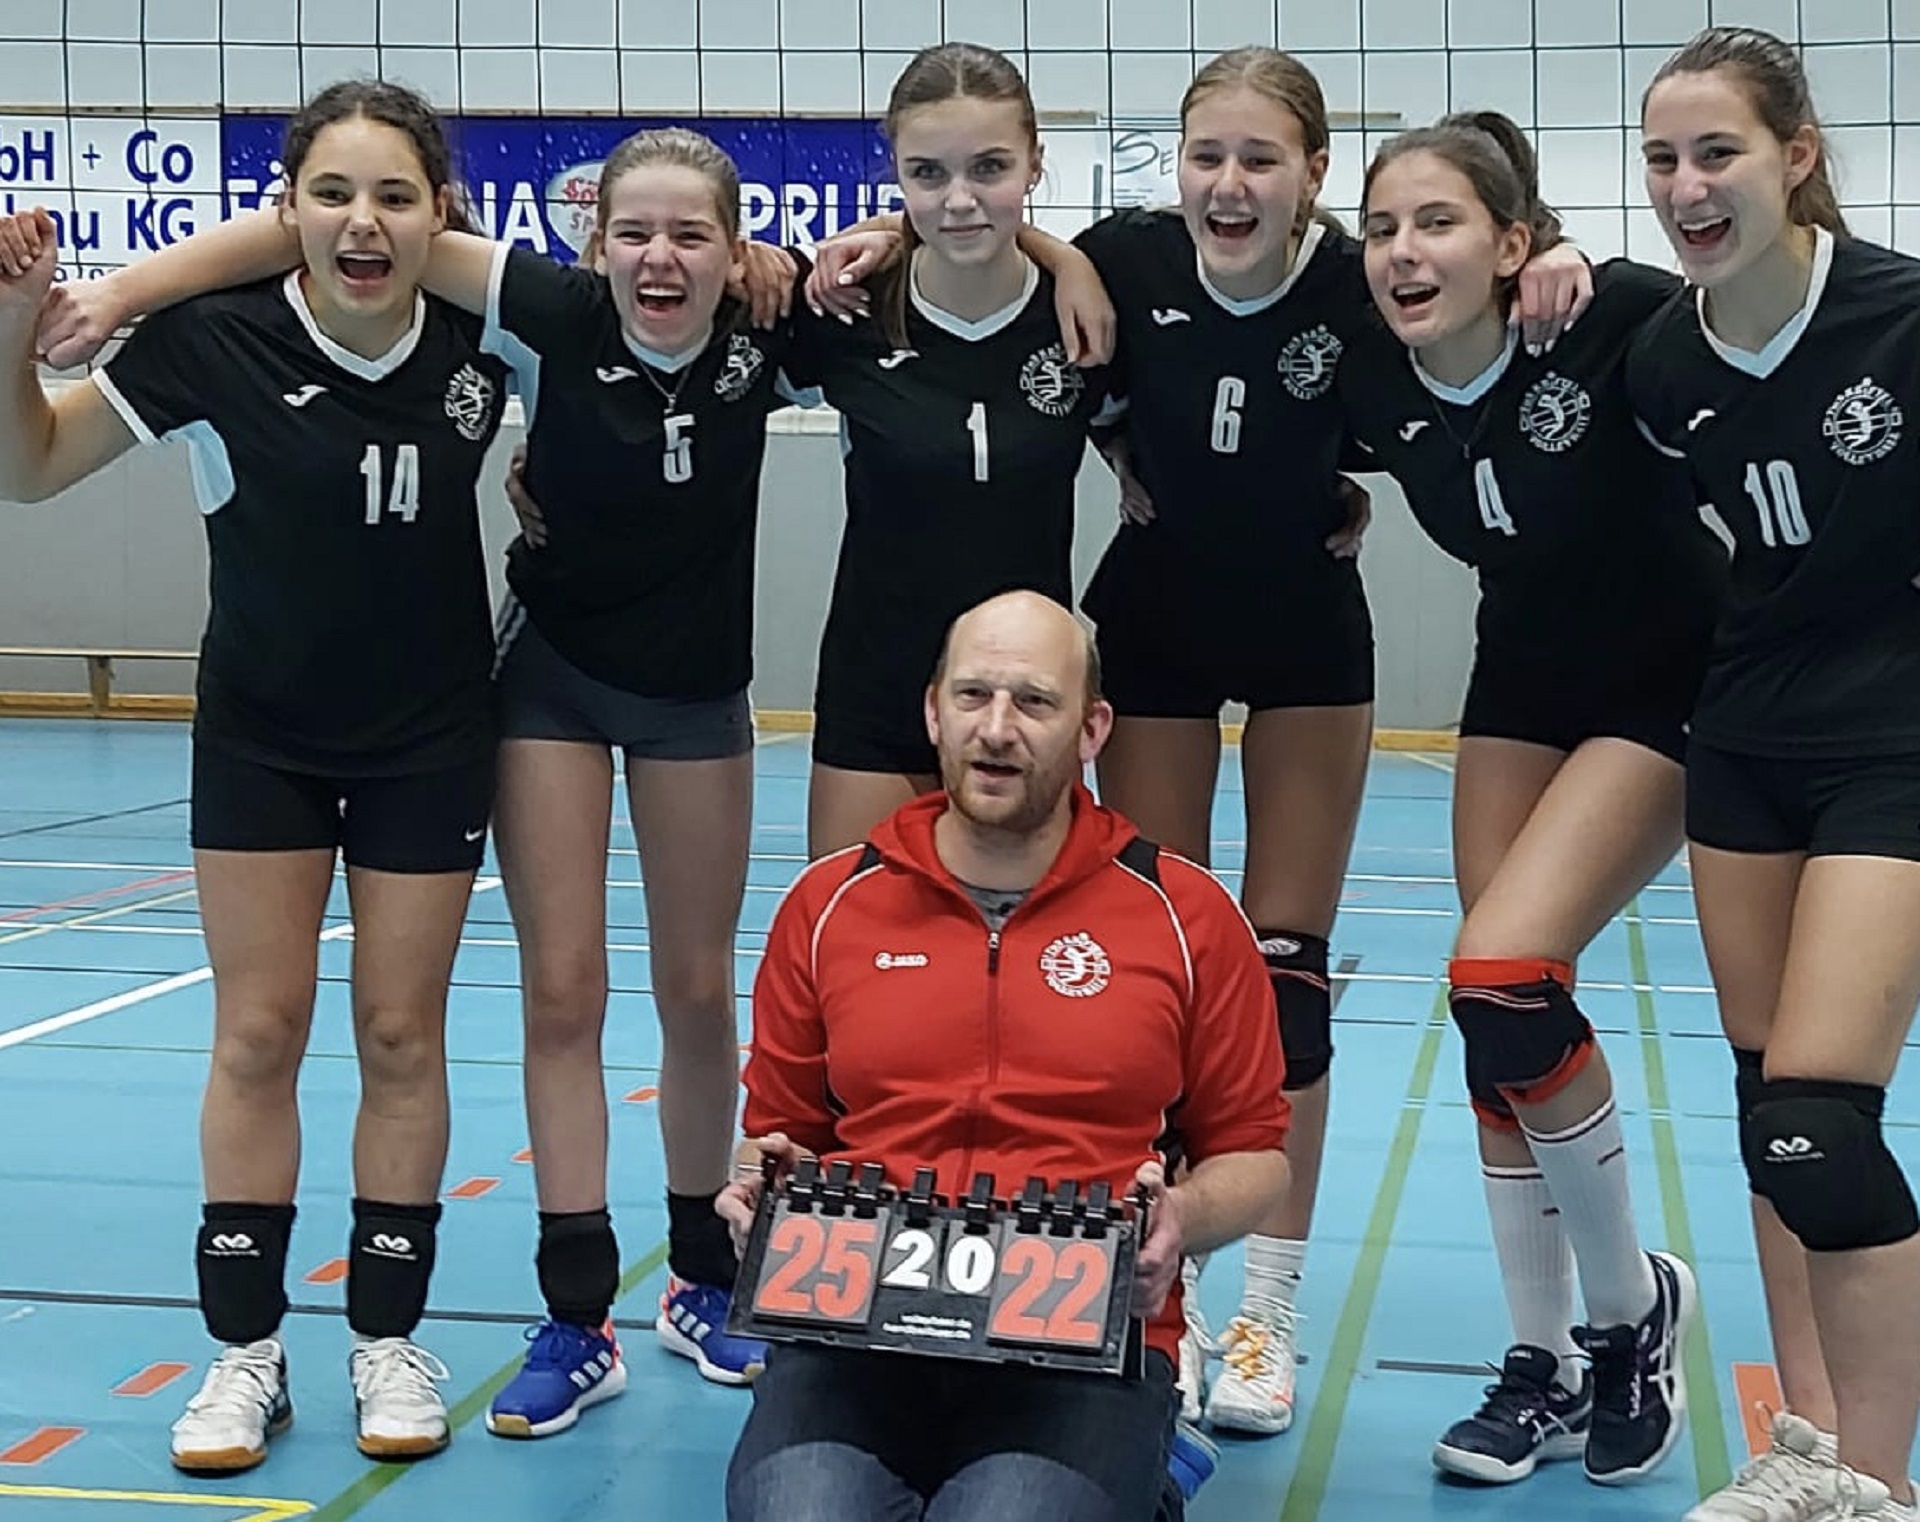 Litauisches Gymnasium ist stolz auf Sportlerin Laura L. (Foto: Laura L.)